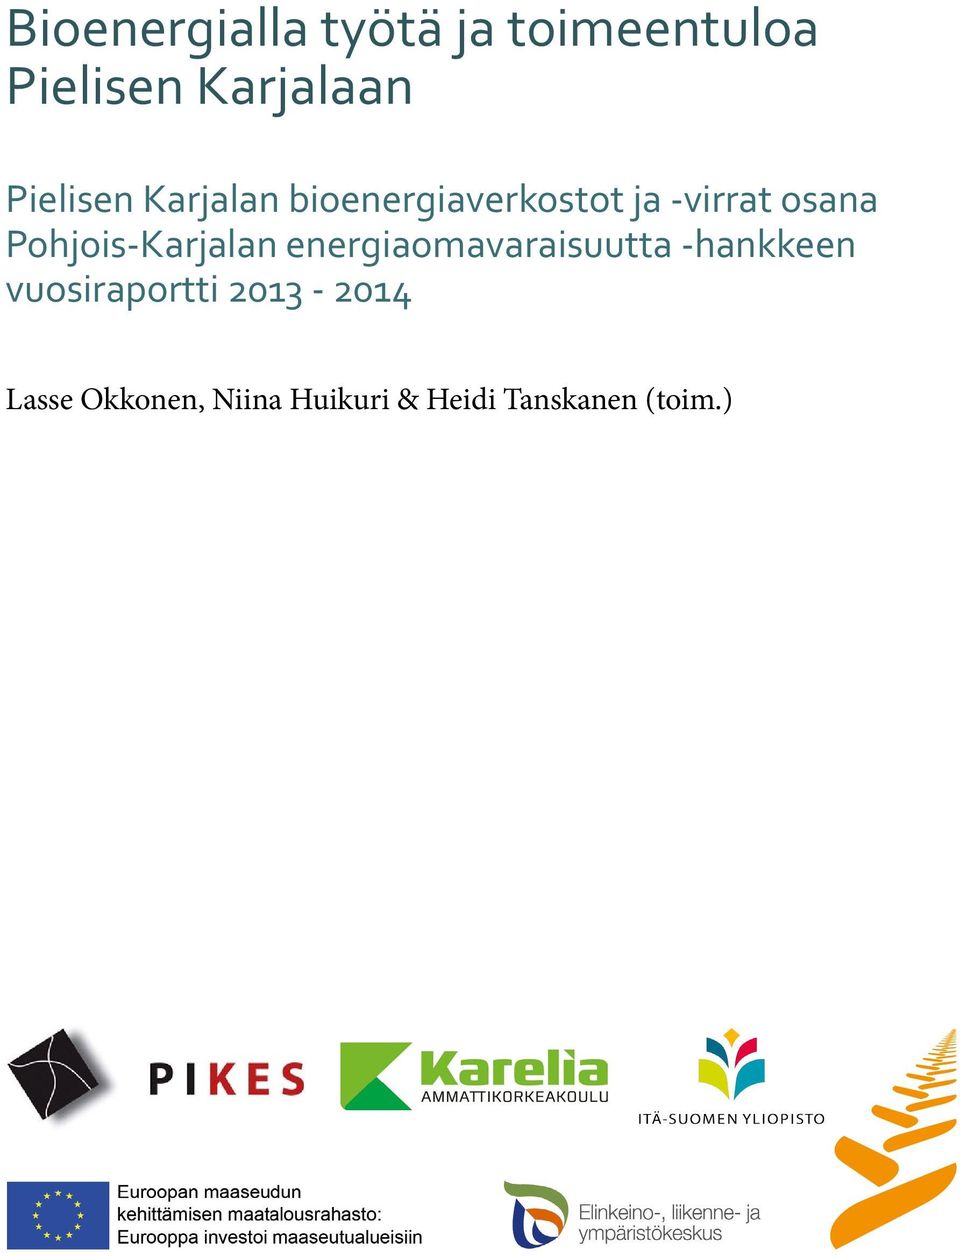 Pohjois-Karjalan energiaomavaraisuutta -hankkeen